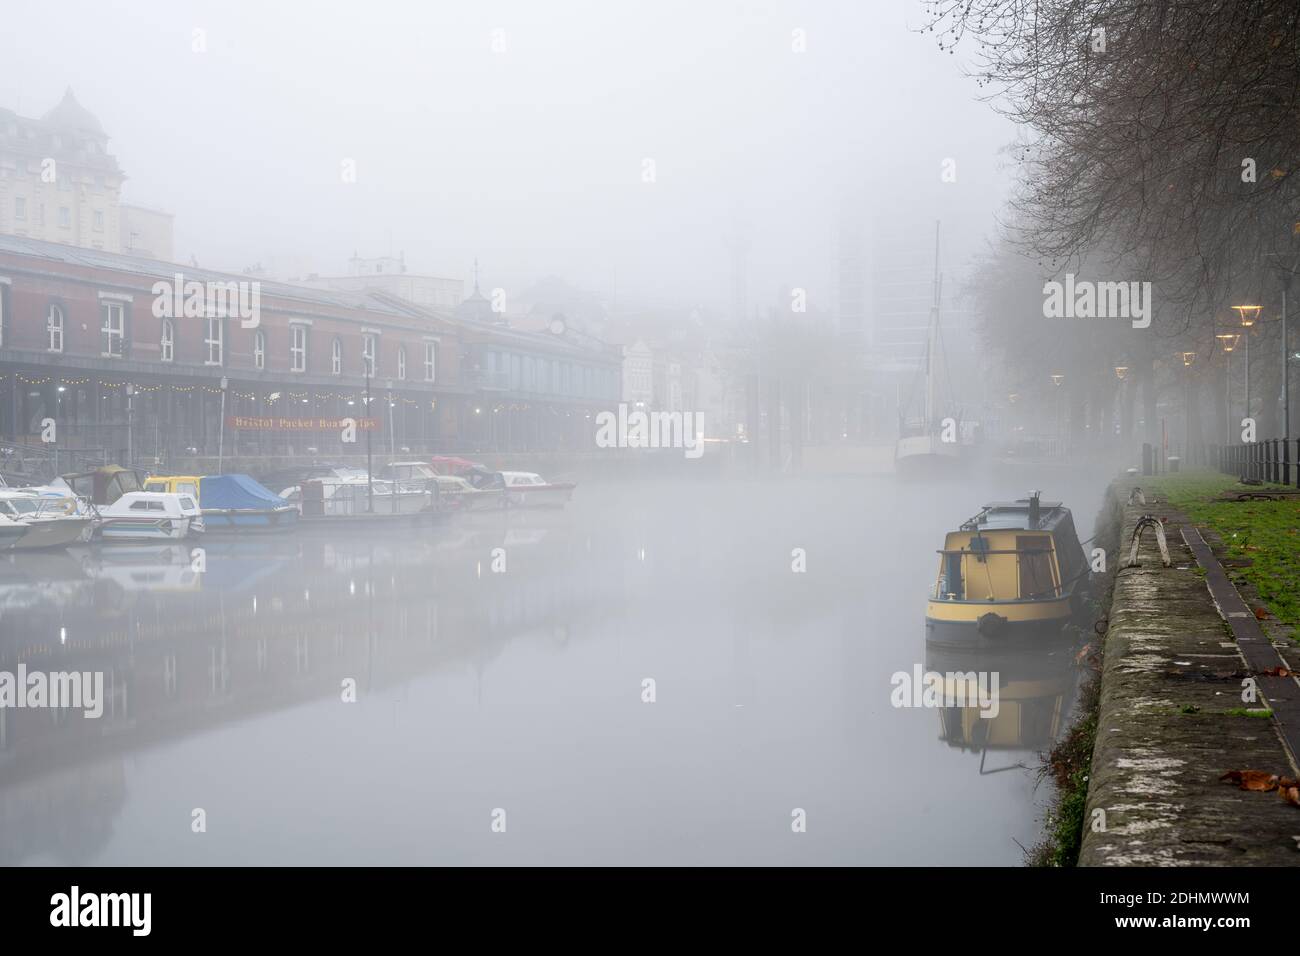 Les bateaux et les bâtiments du Harbourside de Bristol sont enveloppés de brouillard le matin de l'automne. Banque D'Images